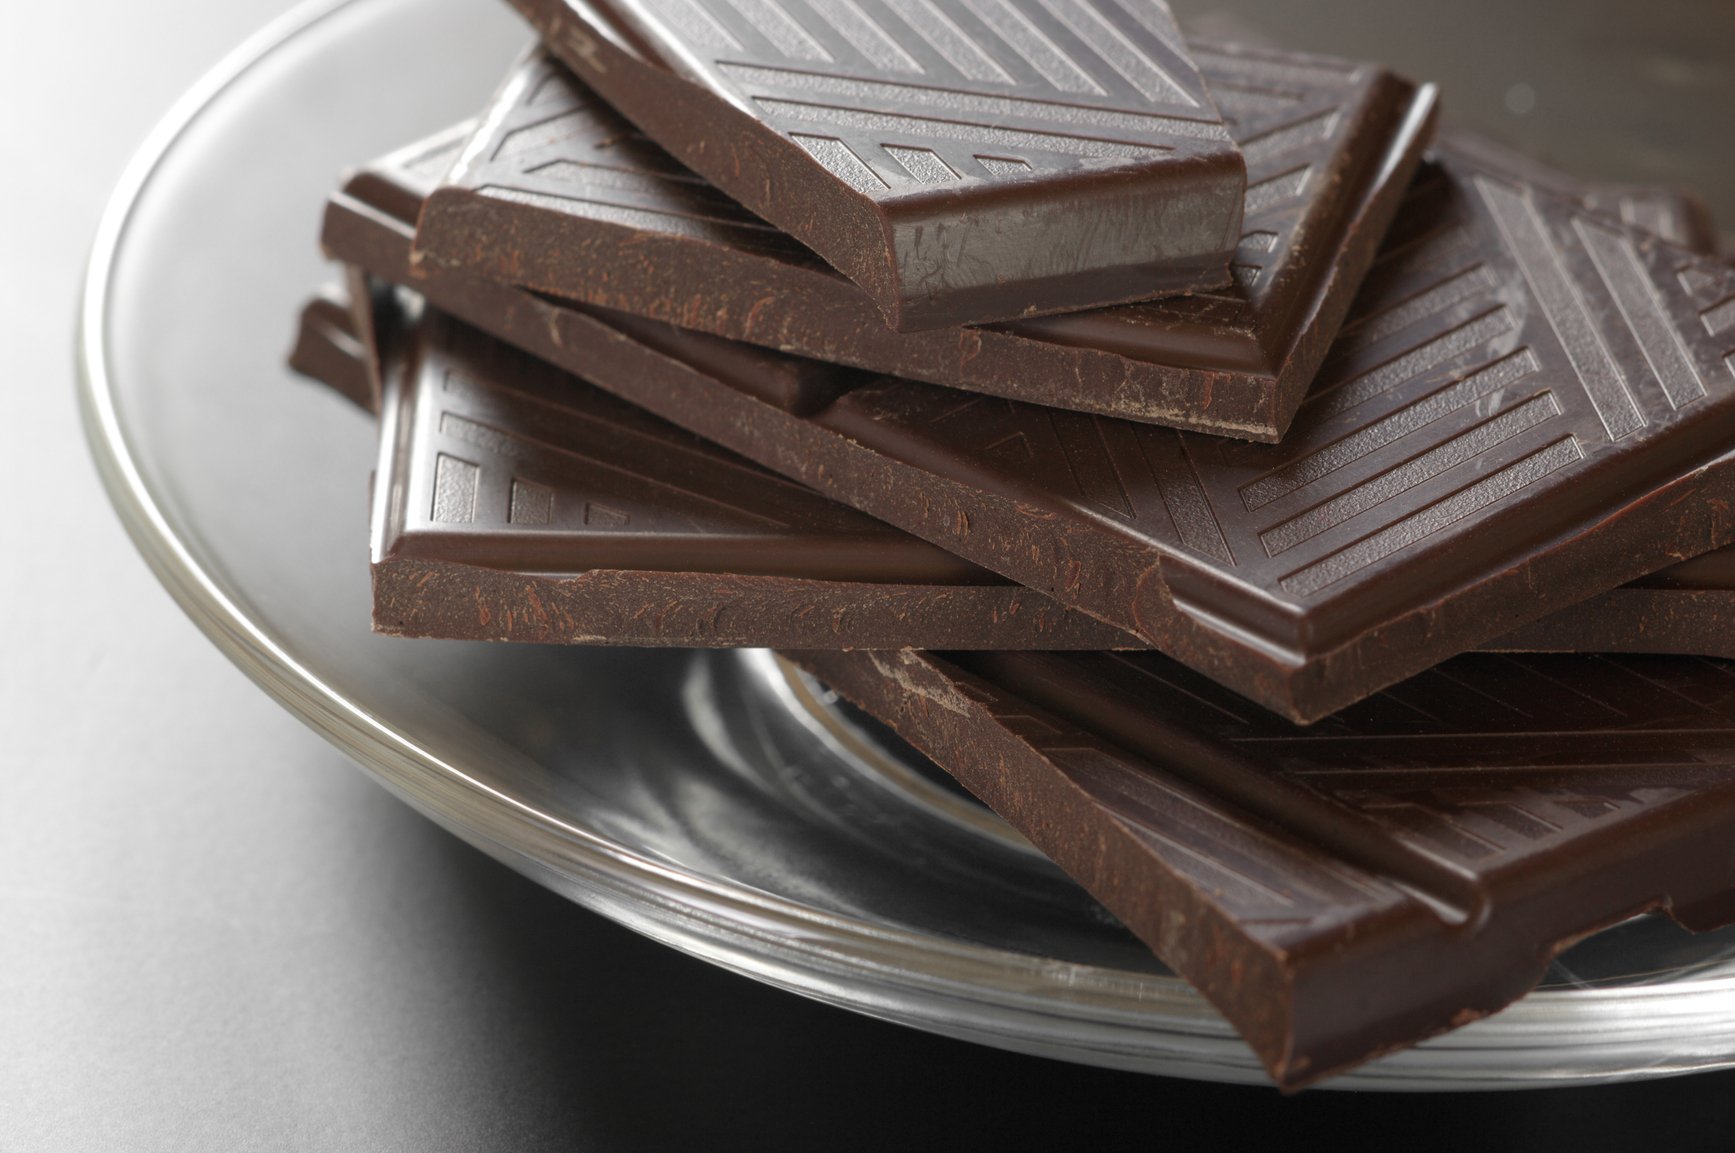 Шоколадная тарелка. Шоколад на тарелке. Шоколад Горький. Плиточный шоколад. Темный шоколад.